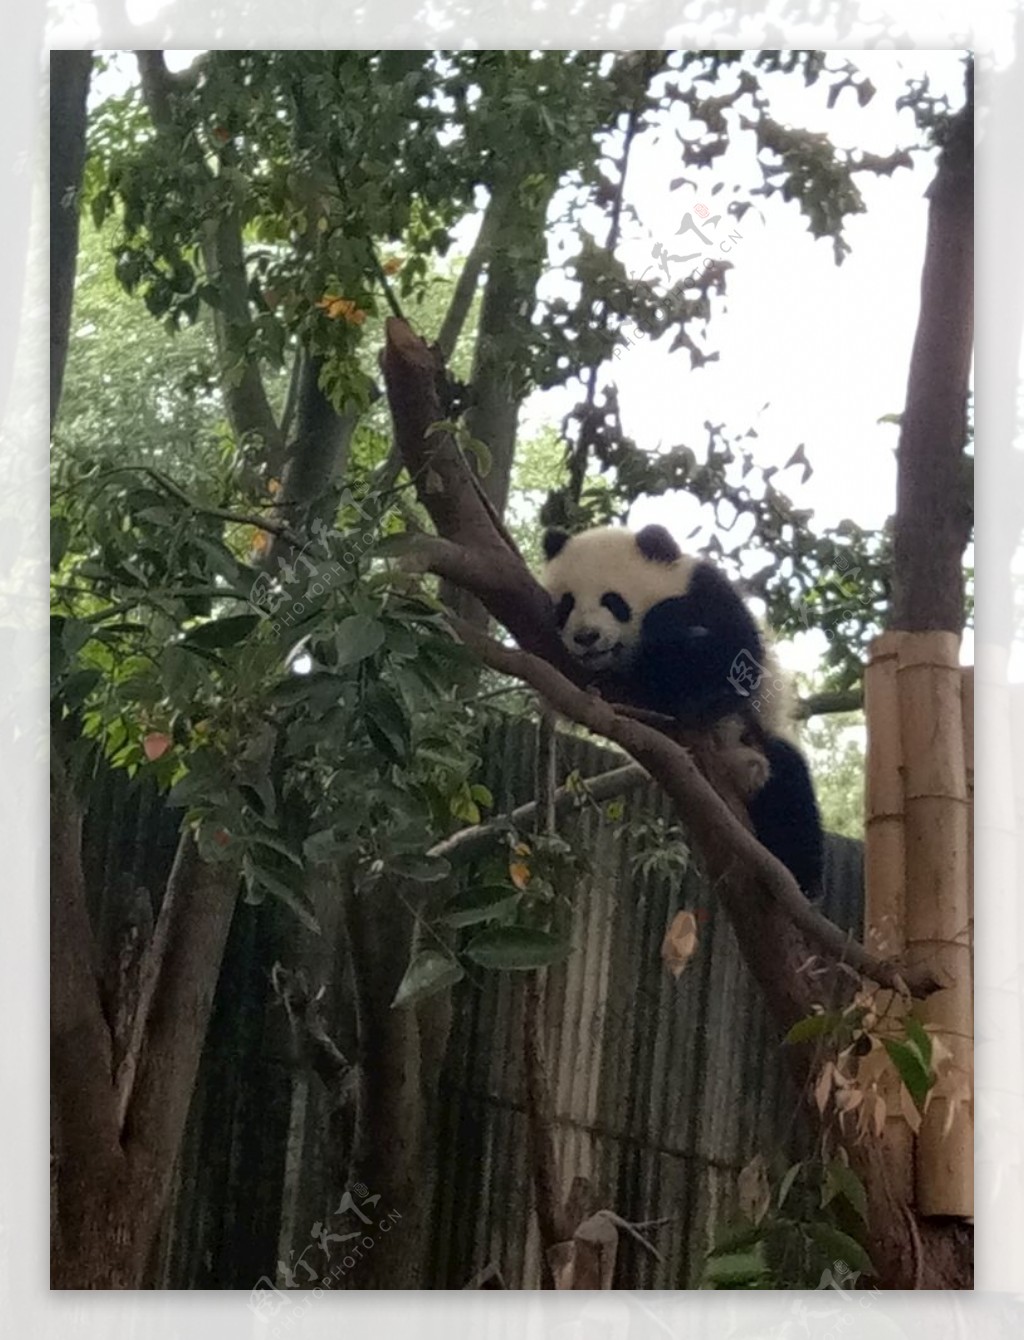 调皮爱爬树的熊猫